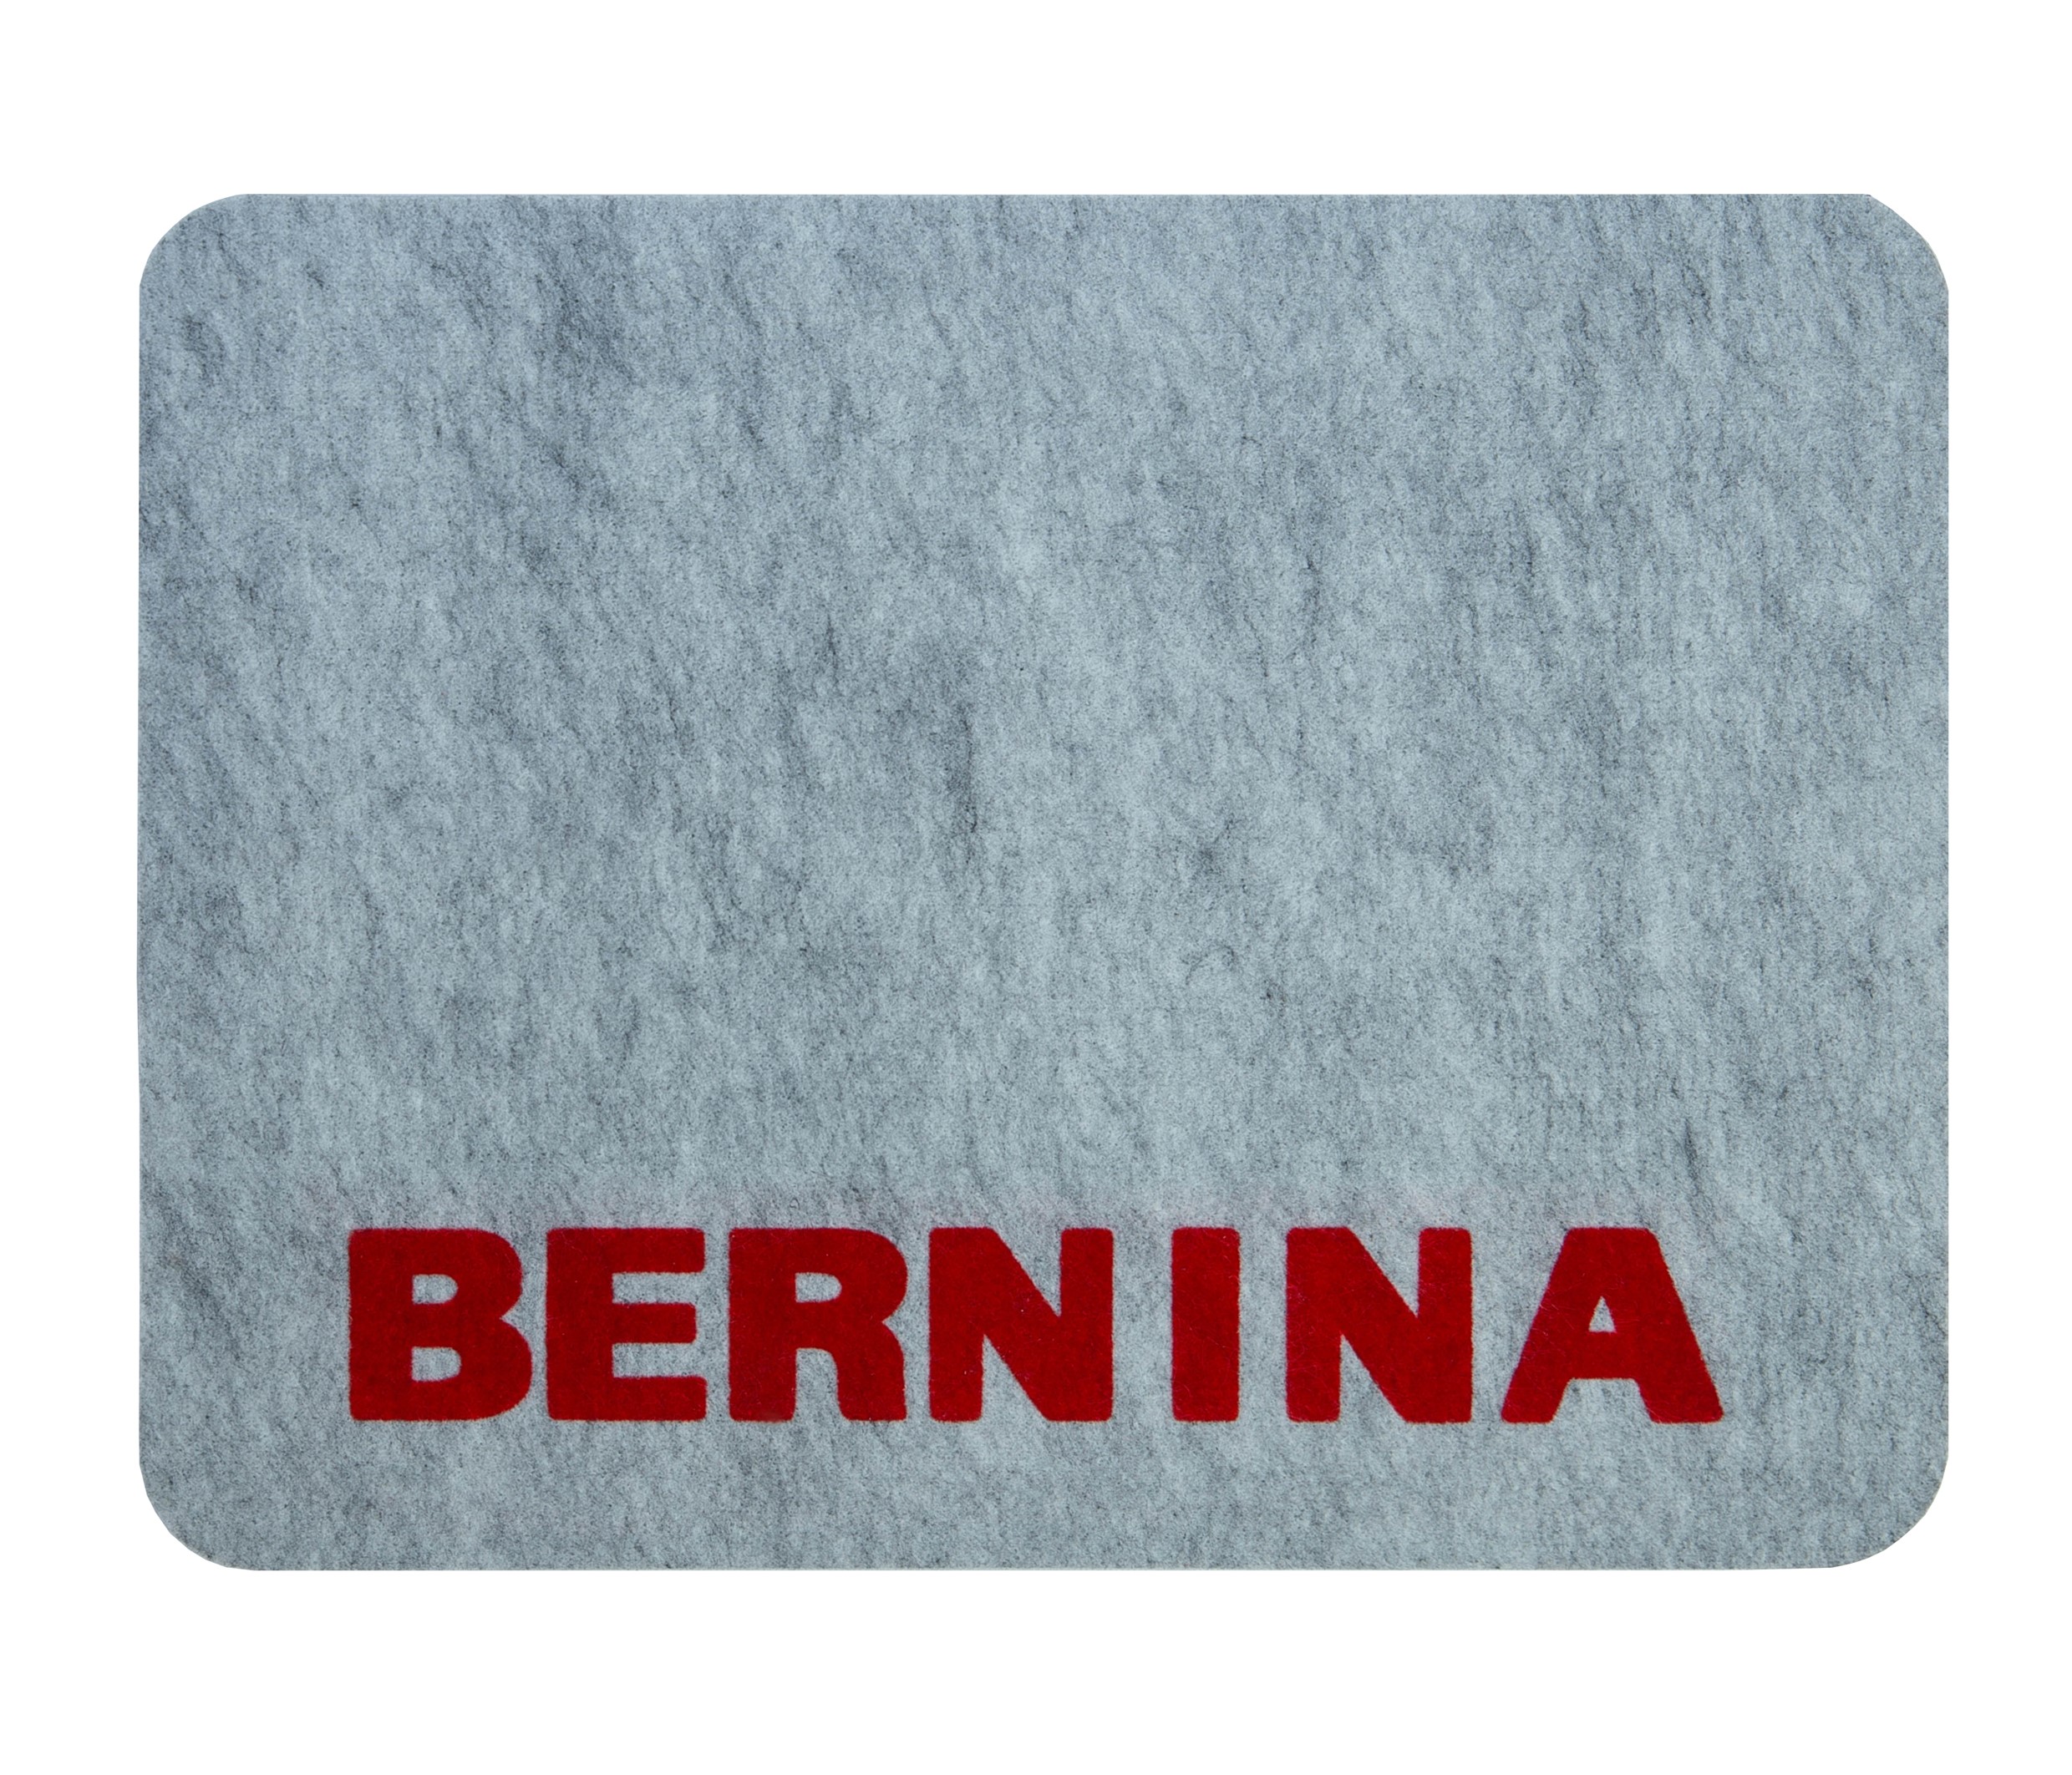 Коврик РусКоврик Bernina коврик для бани войлок серый банные штучки 41342